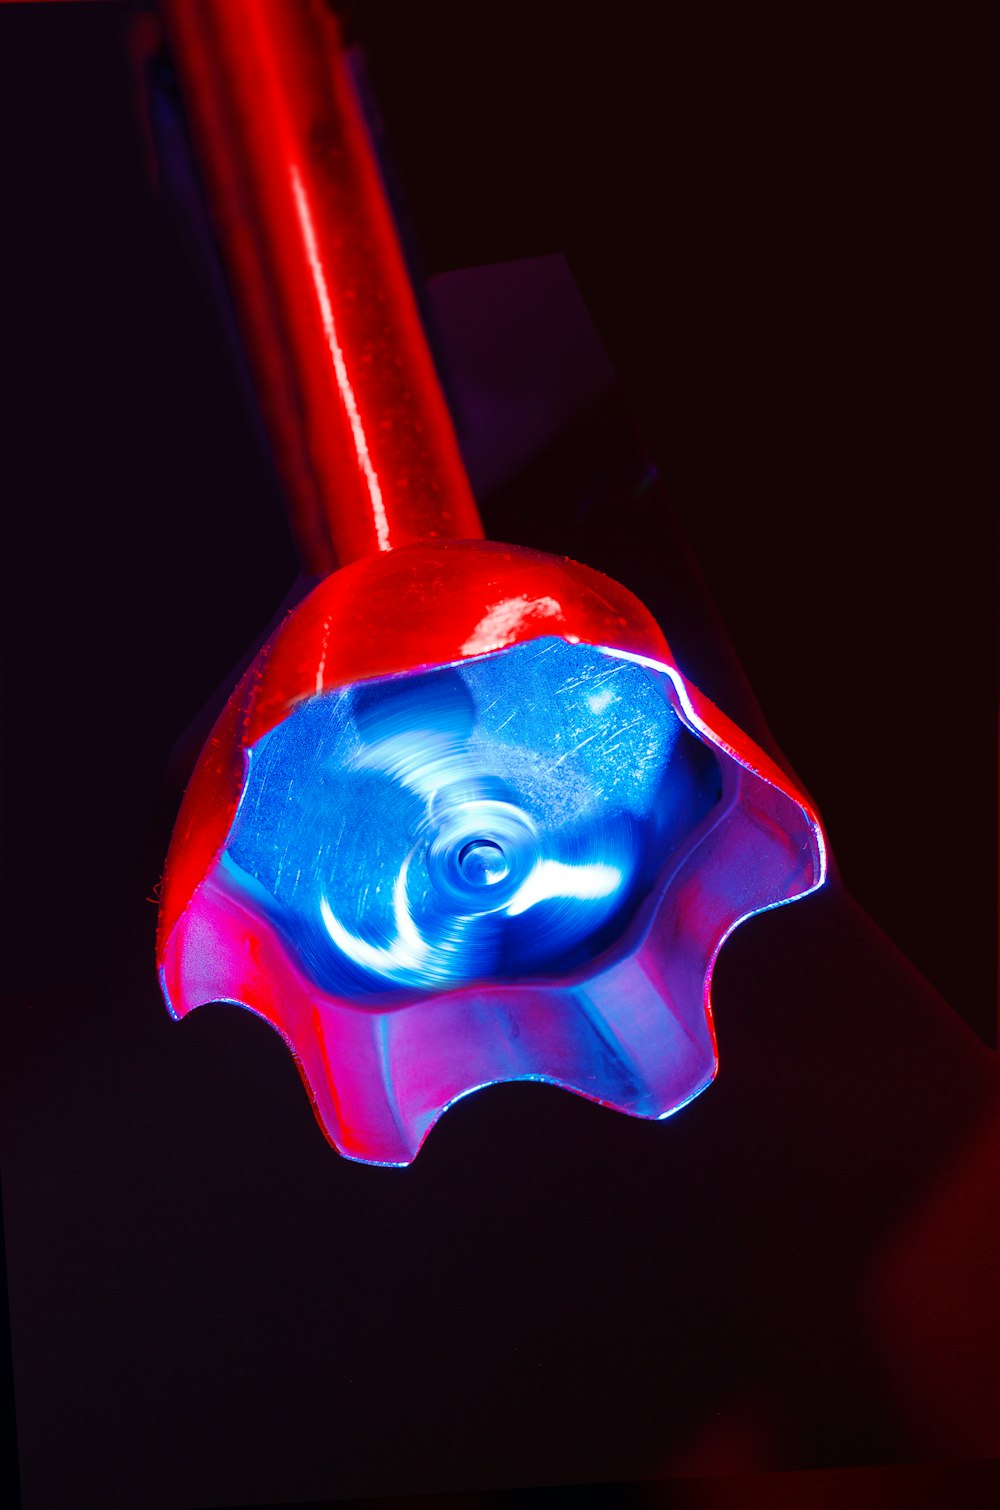 Un primer plano de un objeto rojo y azul